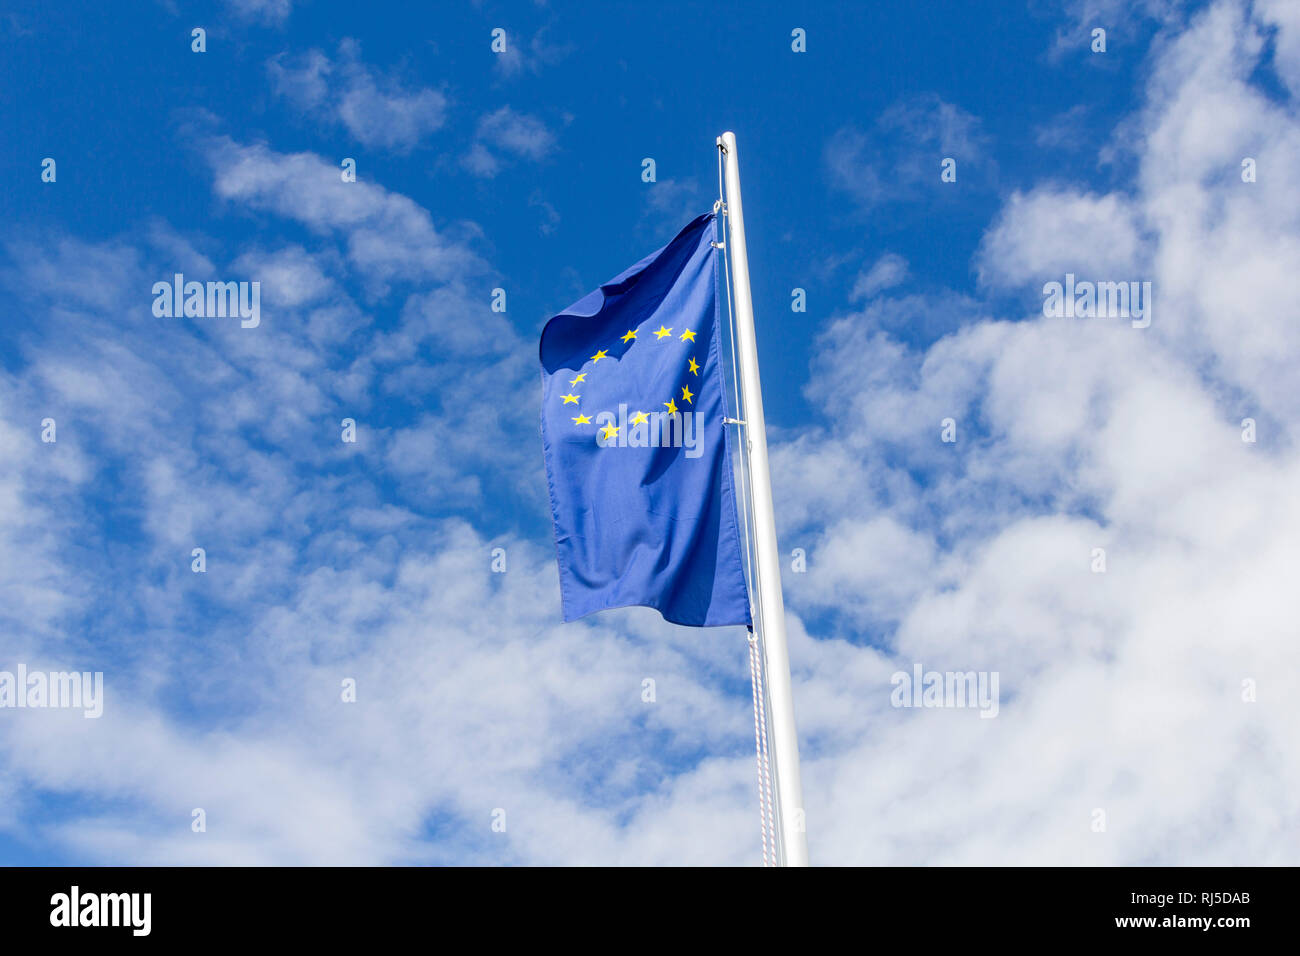 Die Sterne auf der Fahne der europäischen Union flattern im Wind Foto de stock